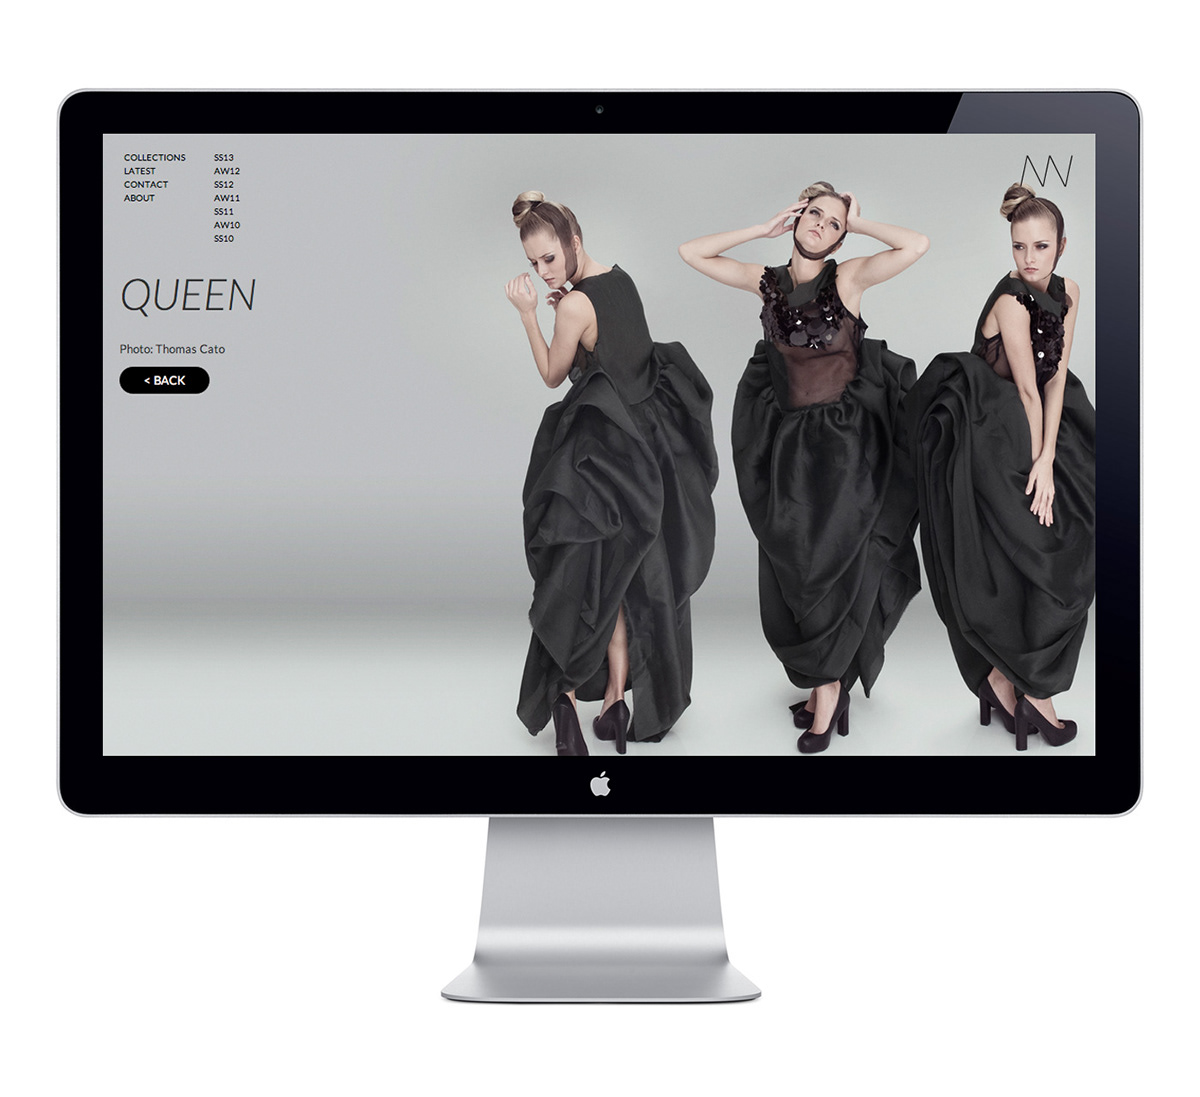 nicholas nybro Webdesign stationary identity Clothing clothes